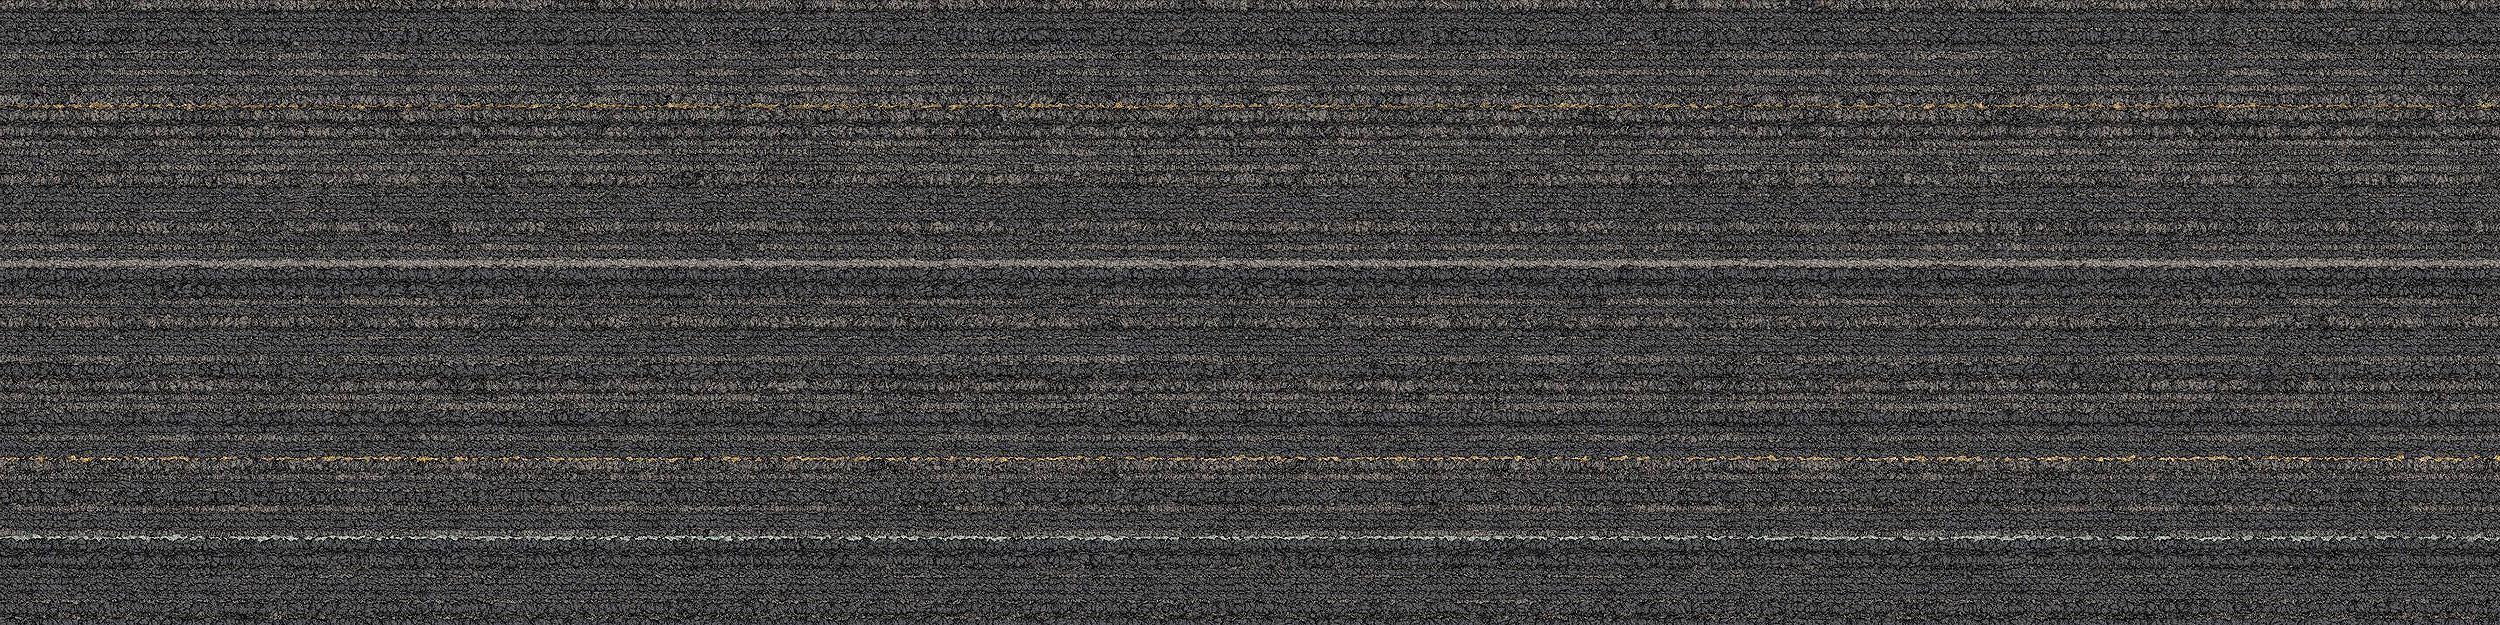 SL920 Carpet Tile In Charcoal Line image number 8